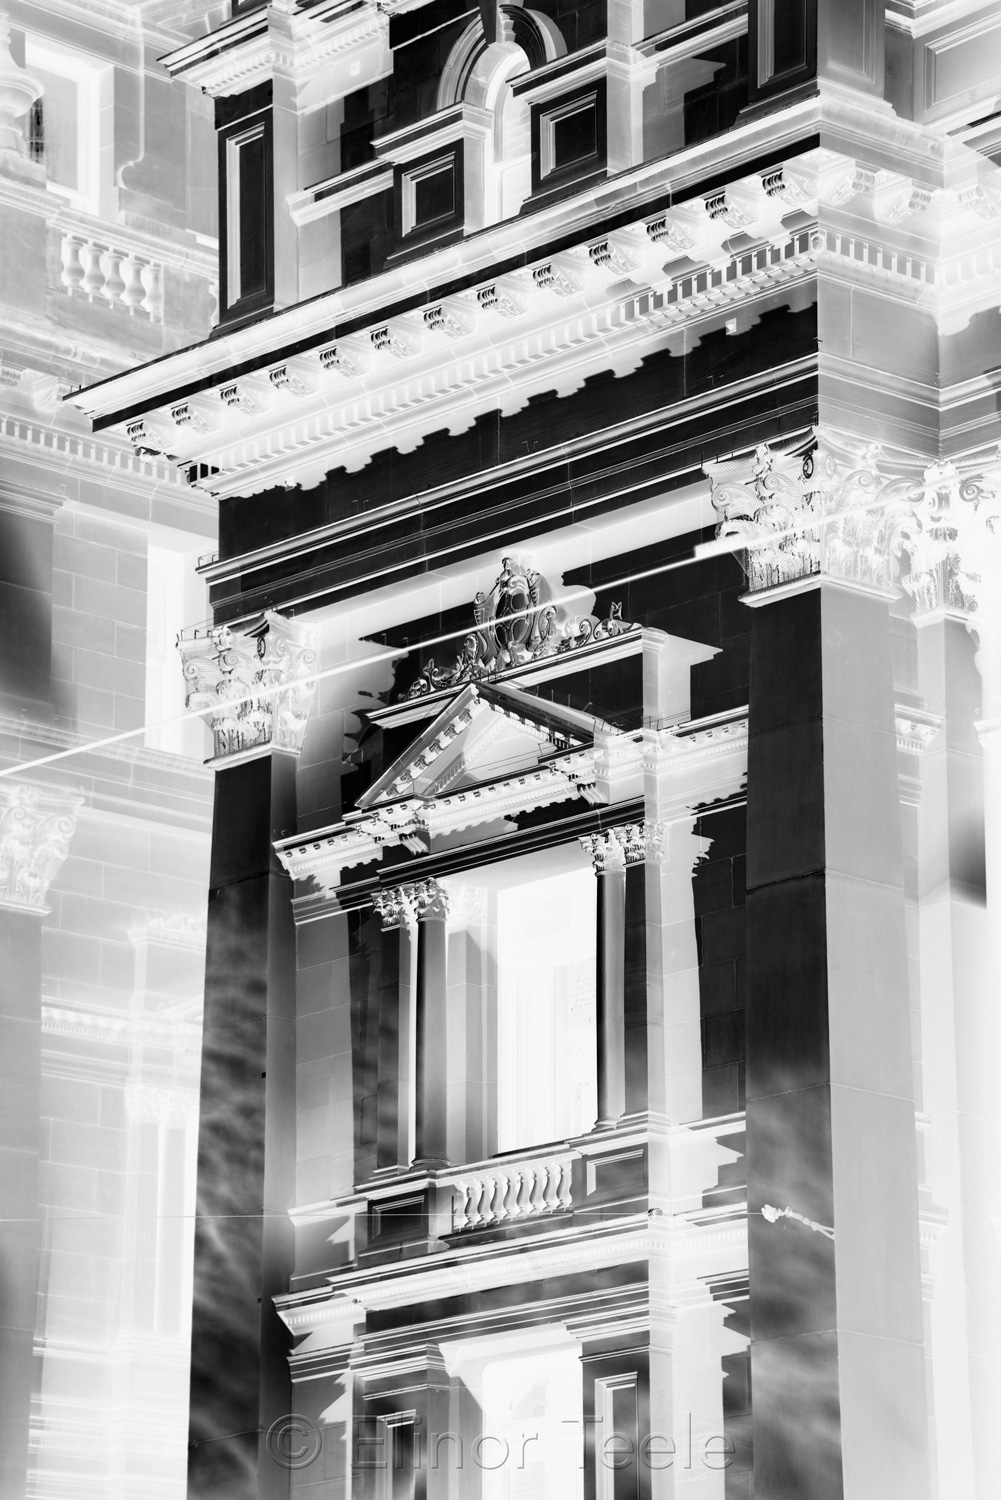 Abstract Melbourne - Victorian Facade